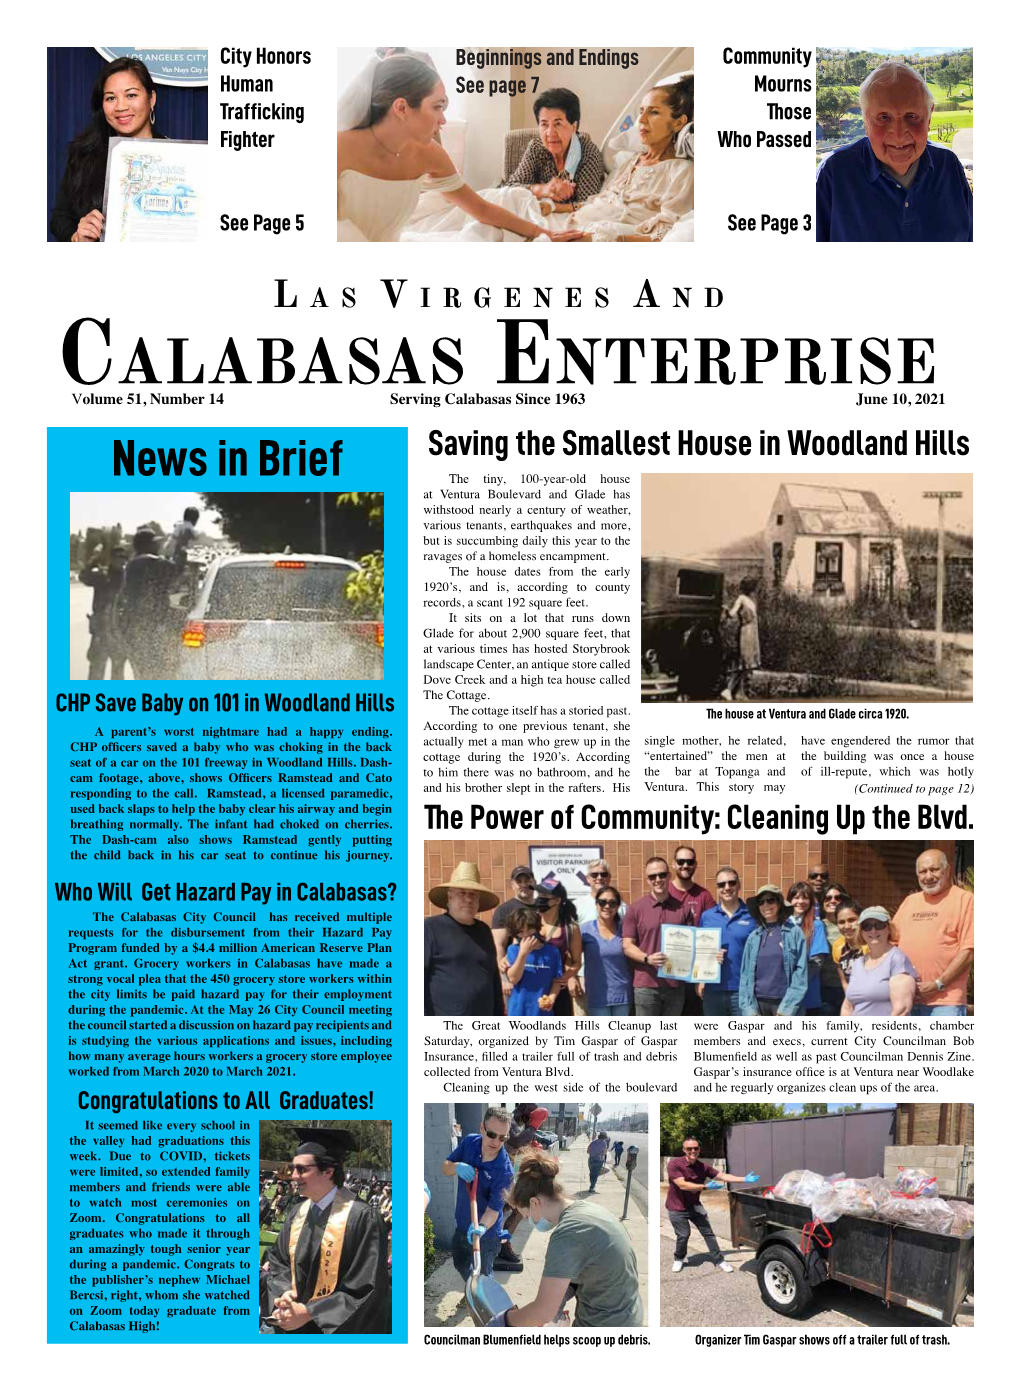 Calabasas Enterprise